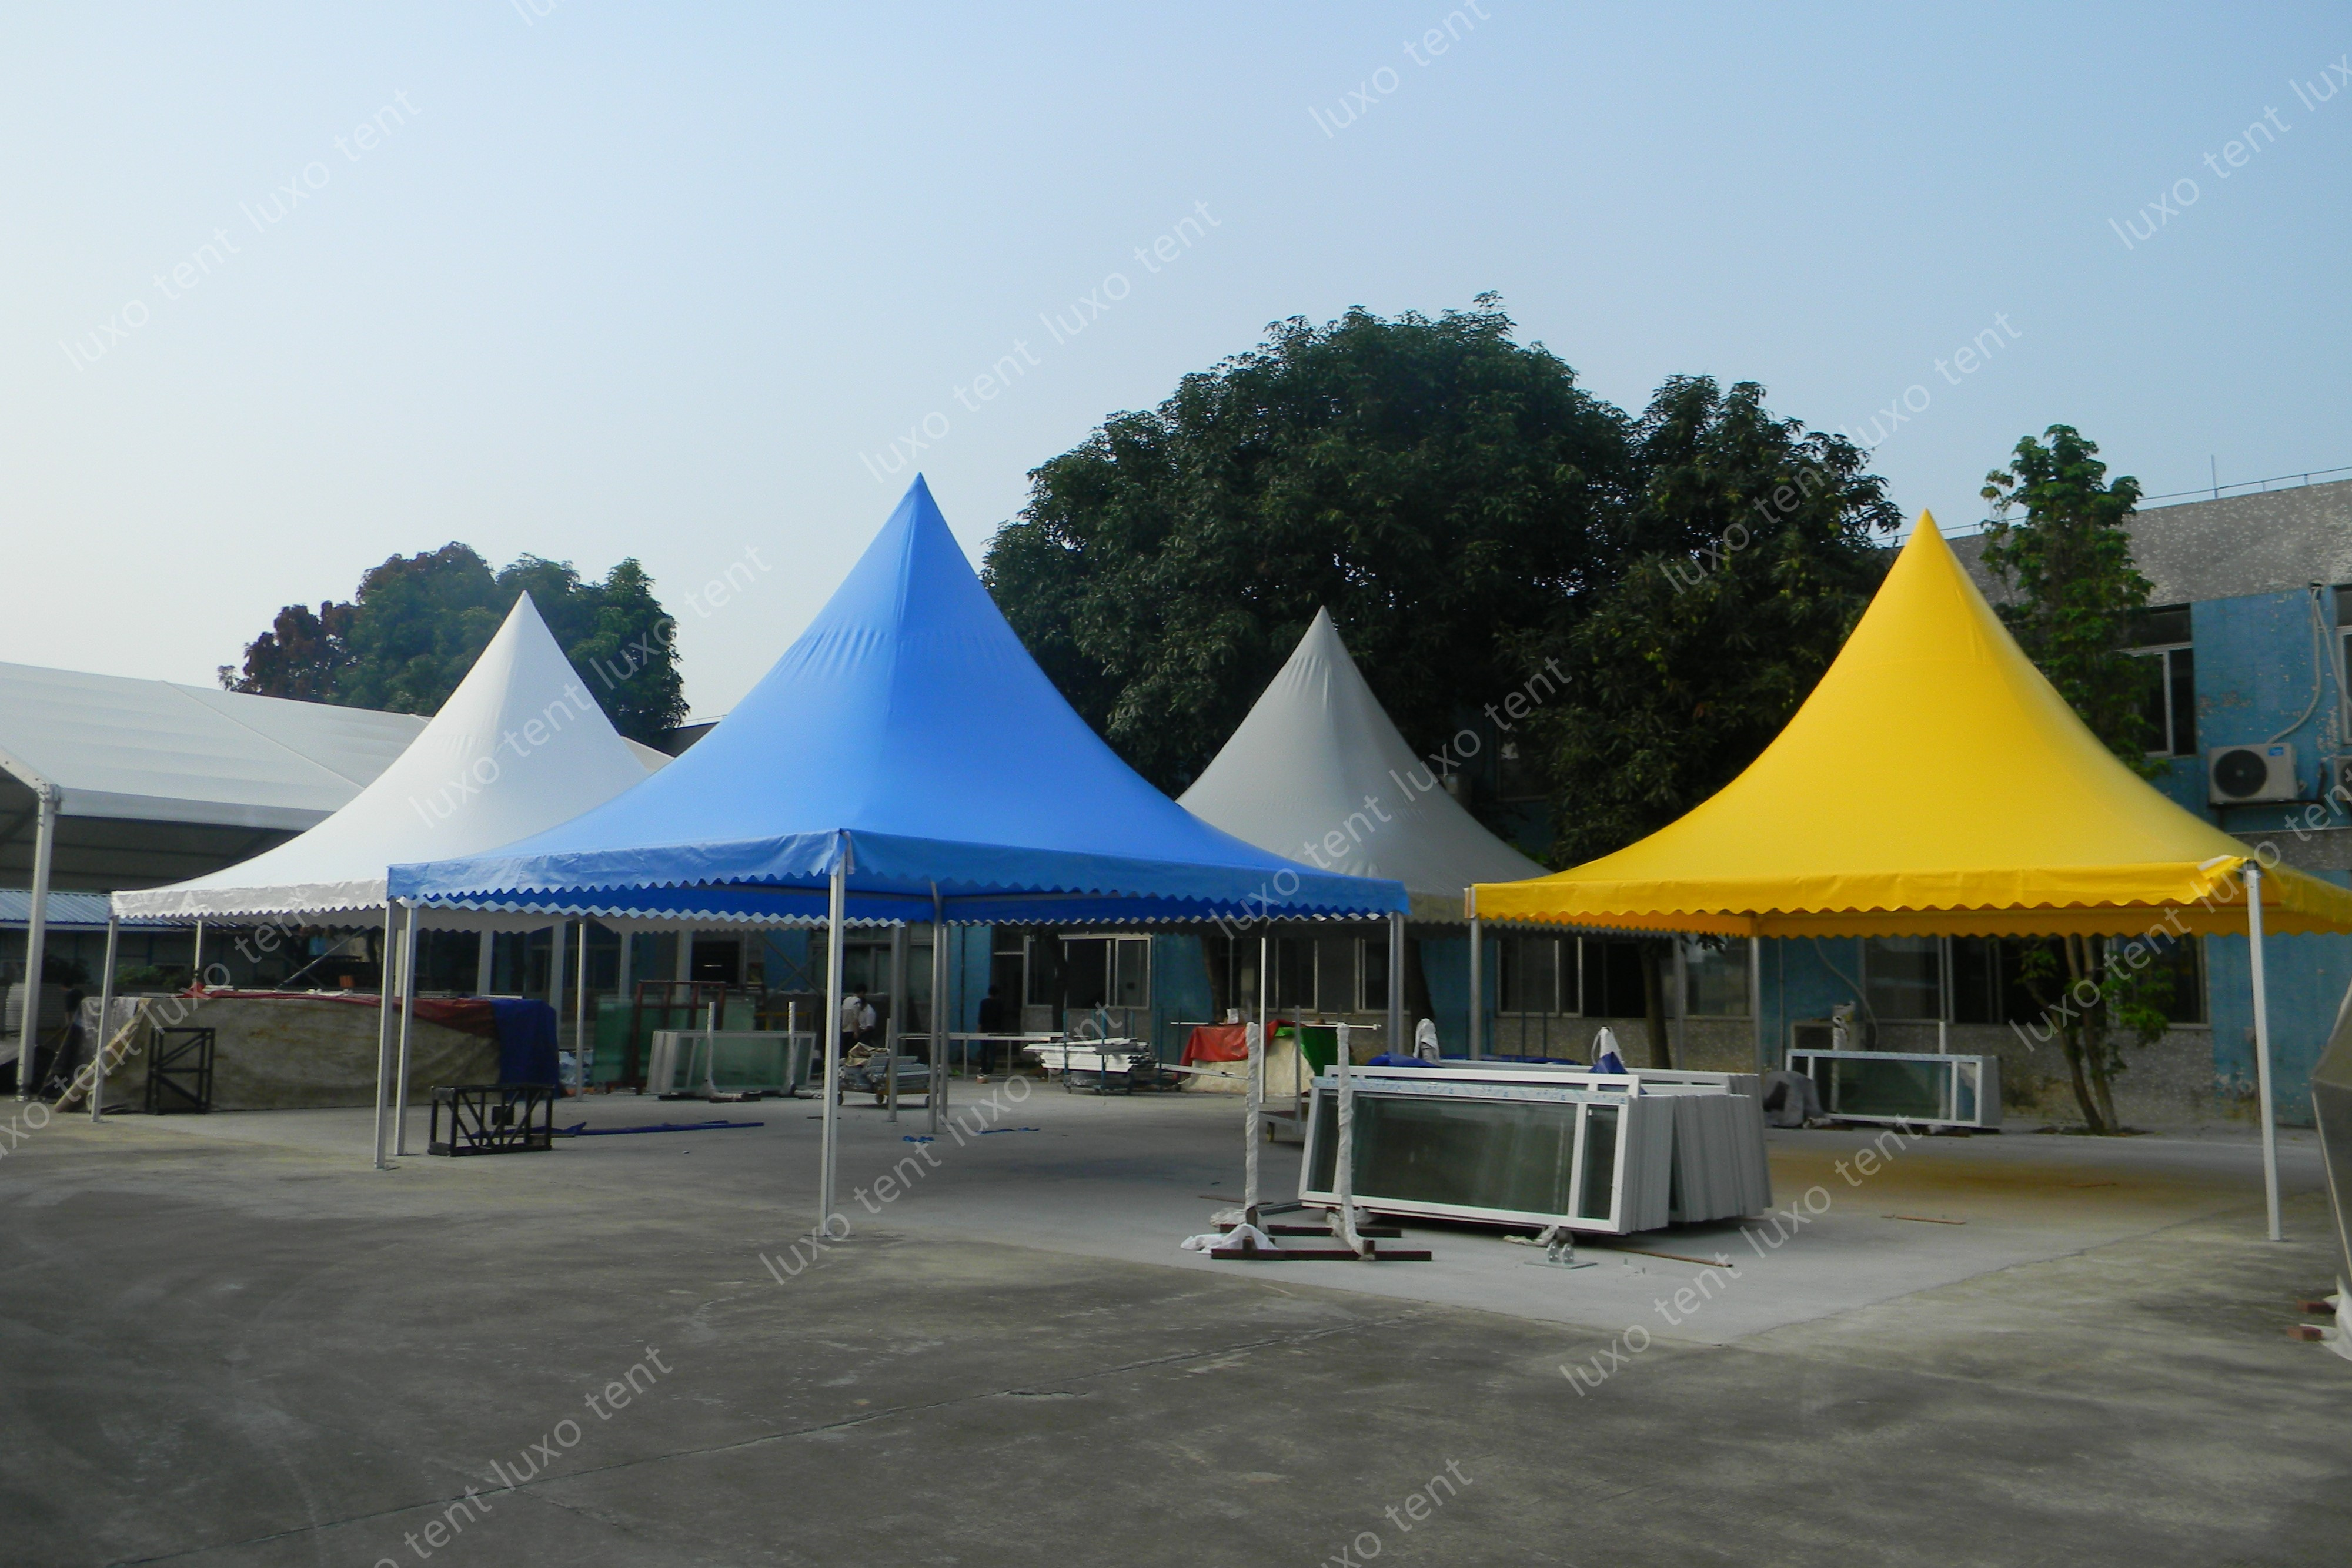 الأزرق الأصفر الألومنيوم الإطار بولي كلوريد الفينيل المظلة معبد سرادق خيمة الحفلات